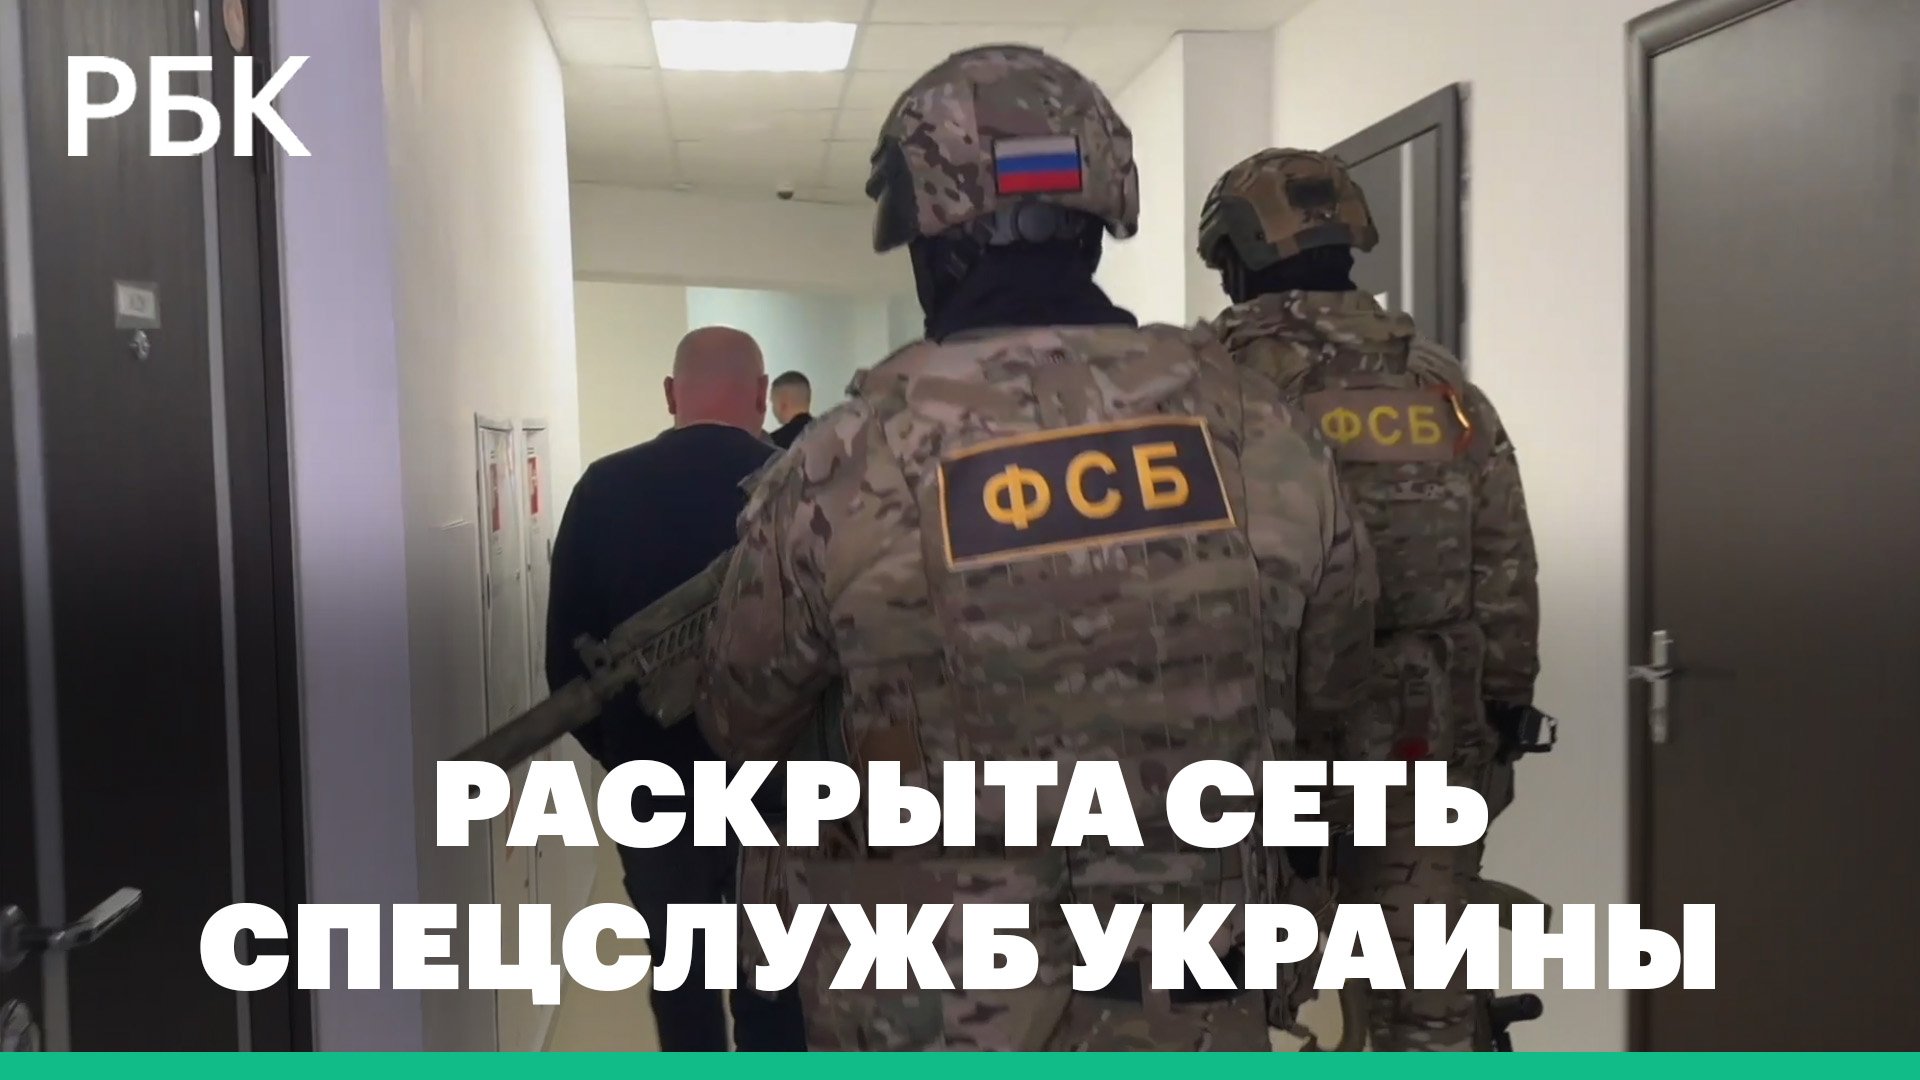 ФСБ раскрыла в Крыму сеть спецслужб Украины, готовивших покушения на чиновников